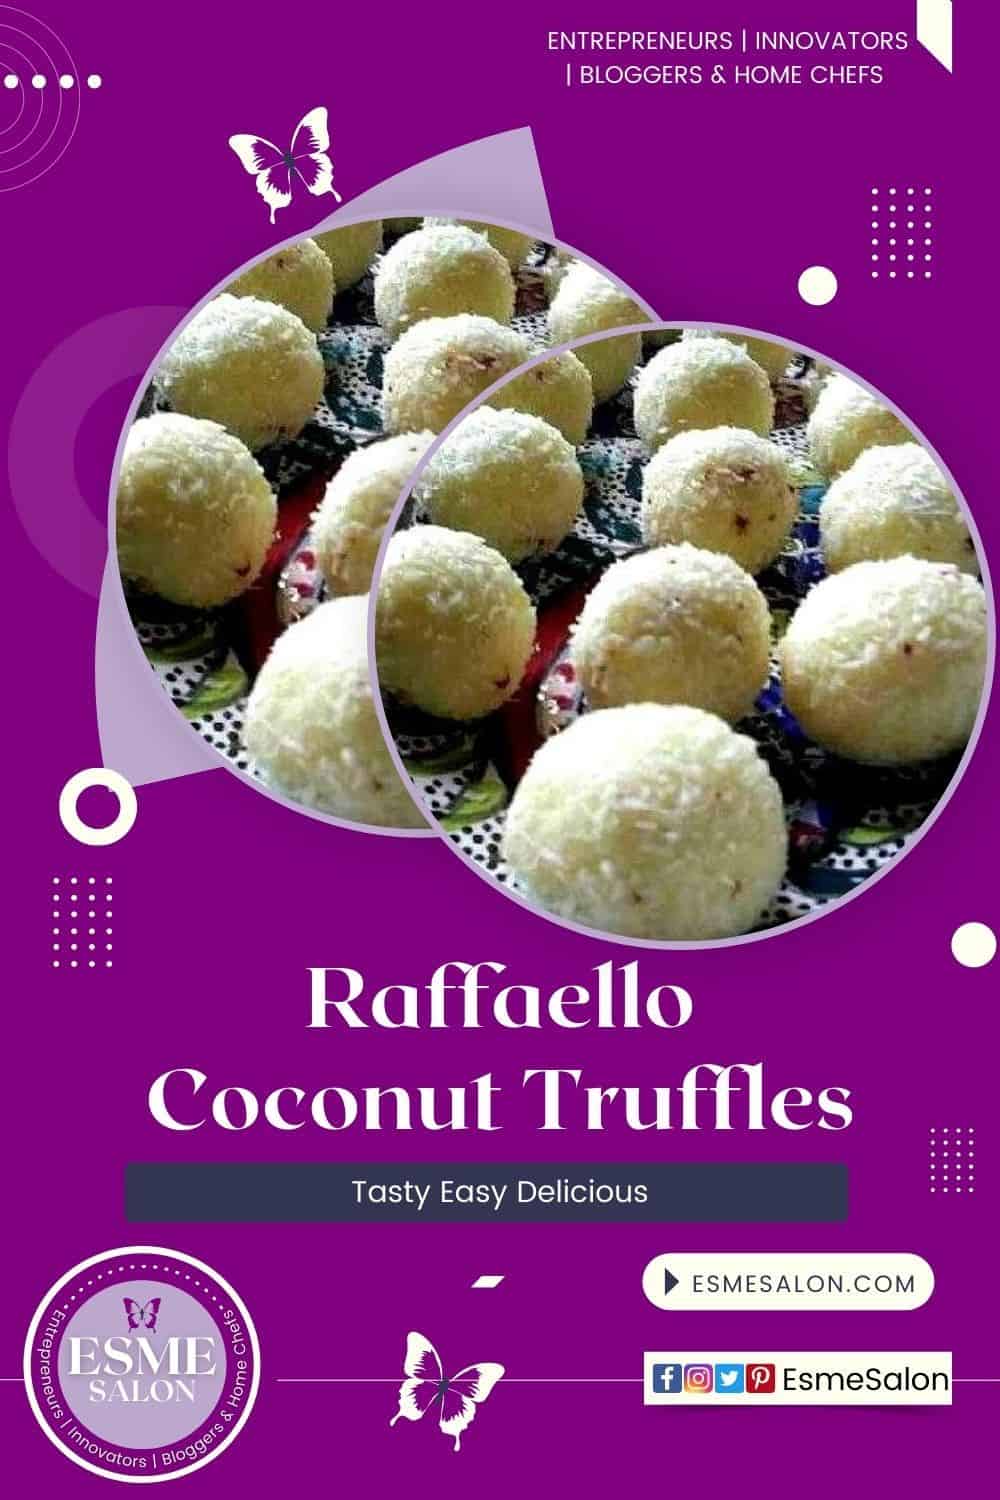 Raffaello Coconut Truffles with red velvet cake centers